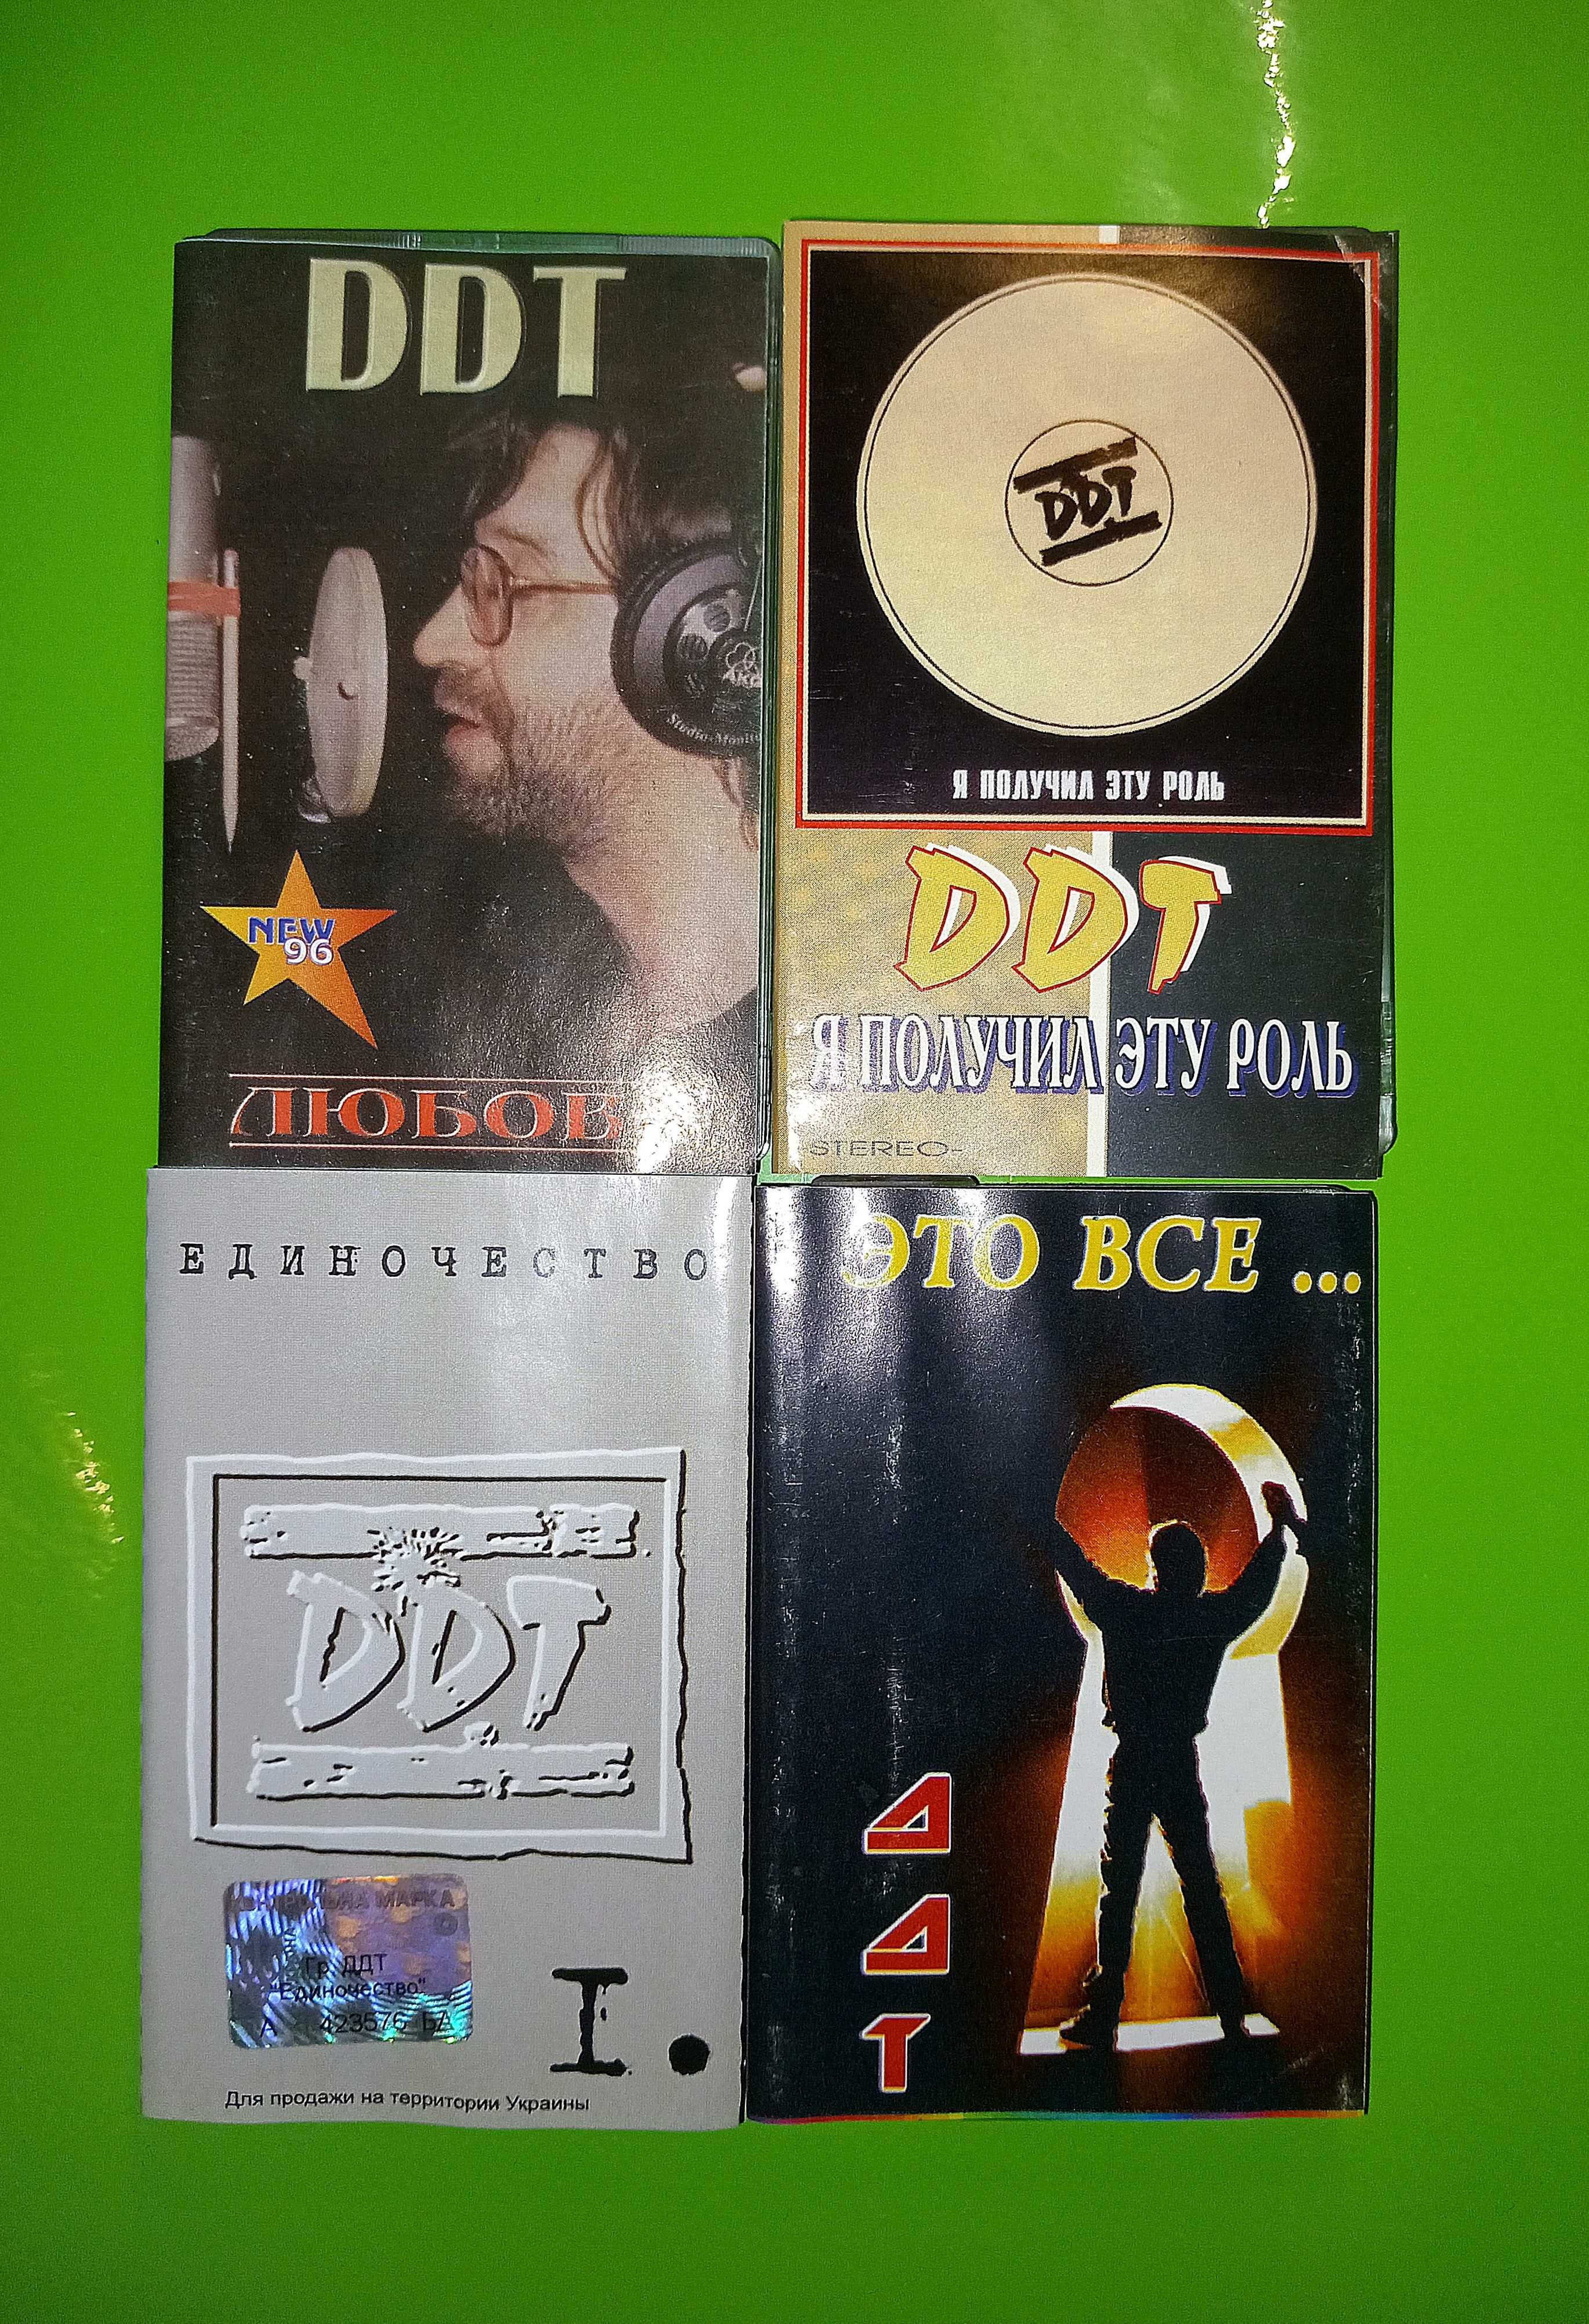 Аудиокассеты «ДДТ» (DDT)